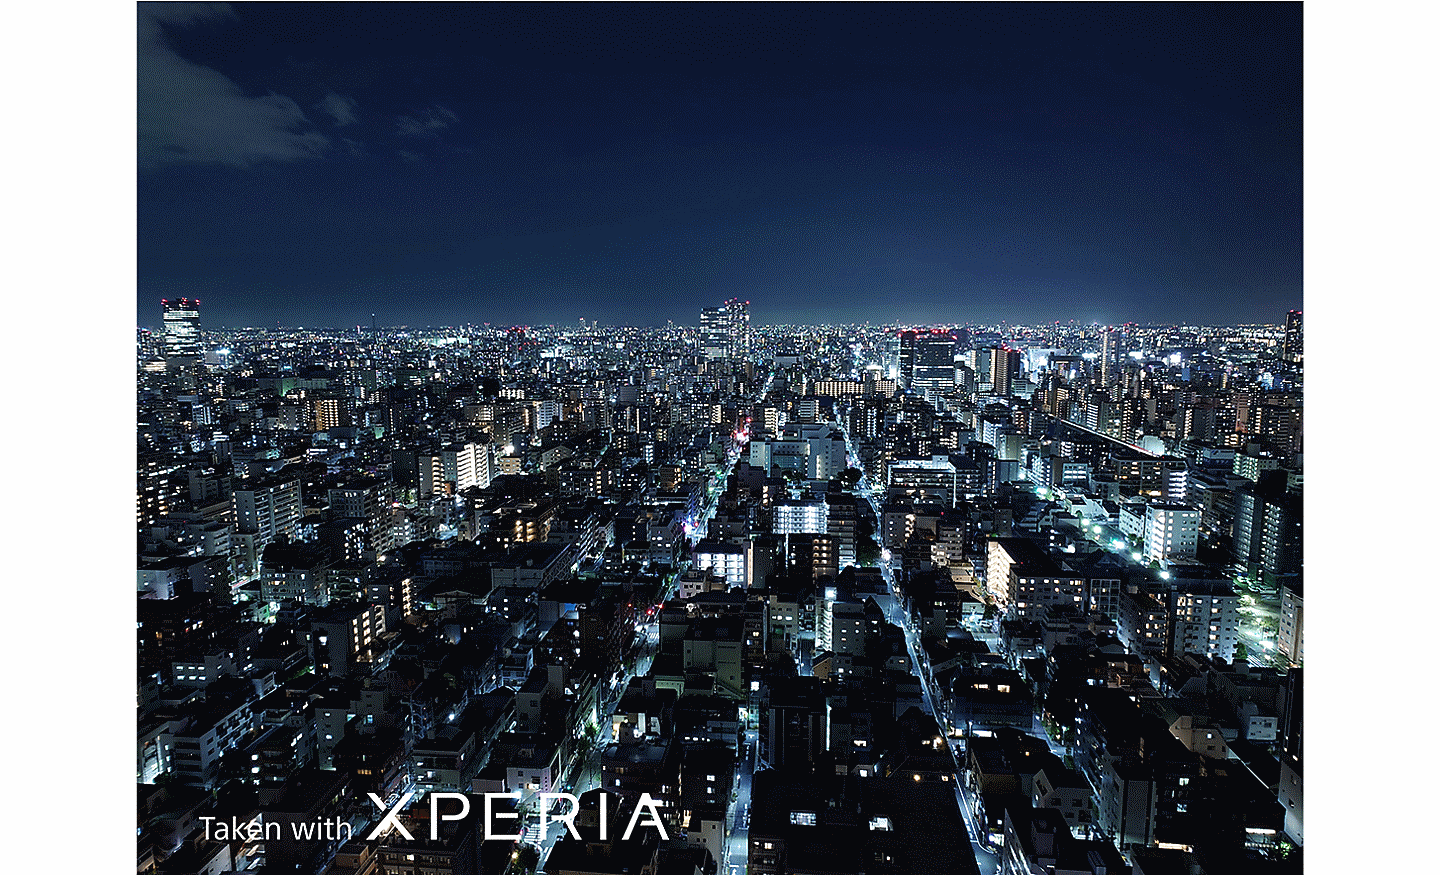 Quang cảnh thành phố rộng lớn về đêm, chụp từ trên cao. Trên ảnh có dòng chữ "Taken with XPERIA” (Chụp bằng XPERIA).